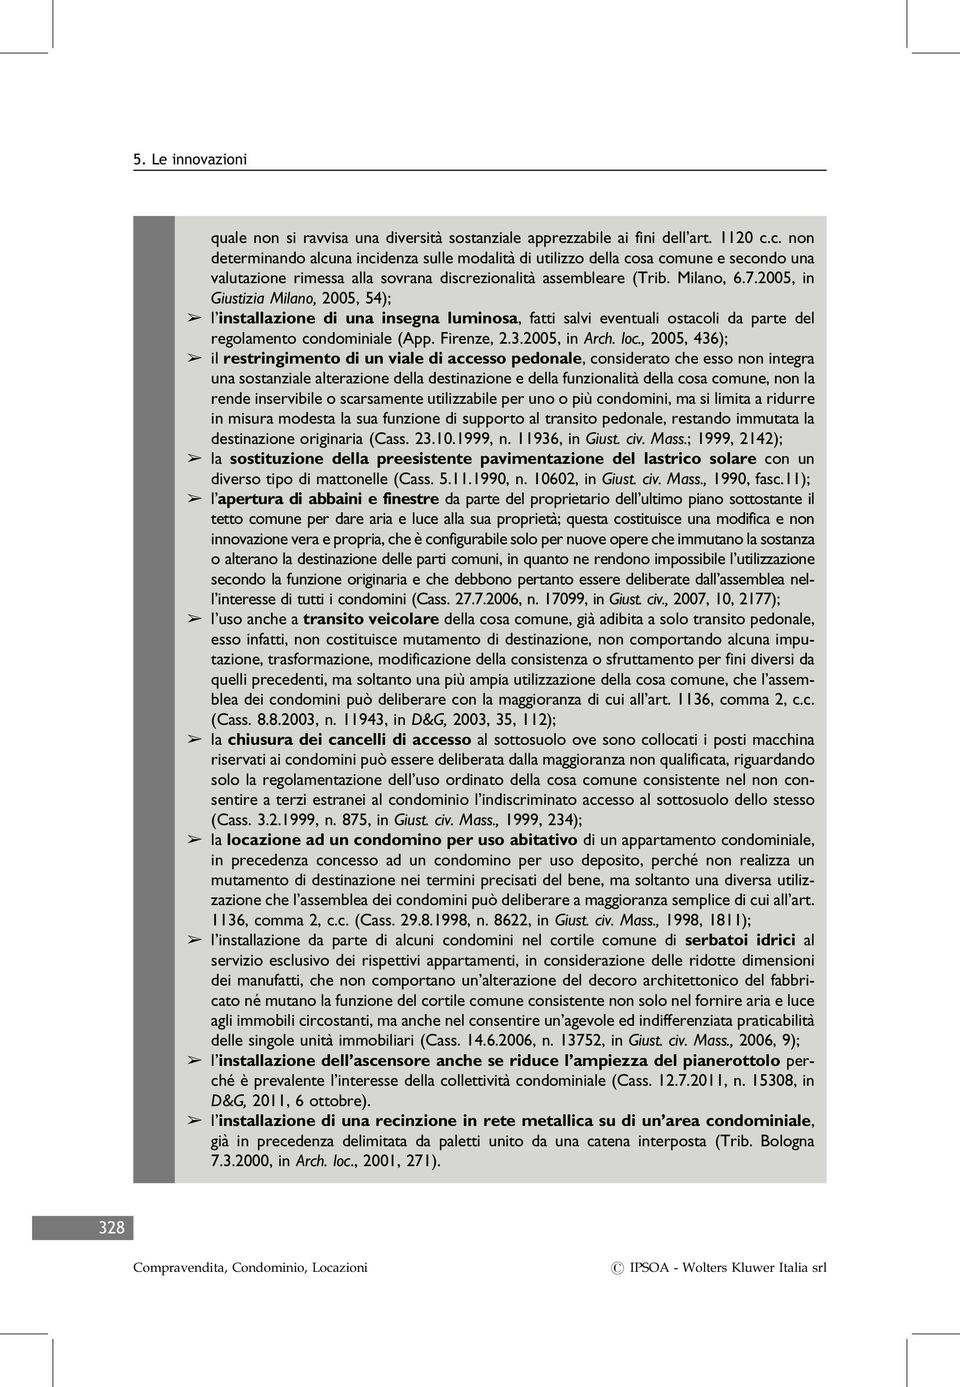 2005, in Giustizia Milano, 2005, 54); â l installazione di una insegna luminosa, fatti salvi eventuali ostacoli da parte del regolamento condominiale (App. Firenze, 2.3.2005, in Arch. loc.